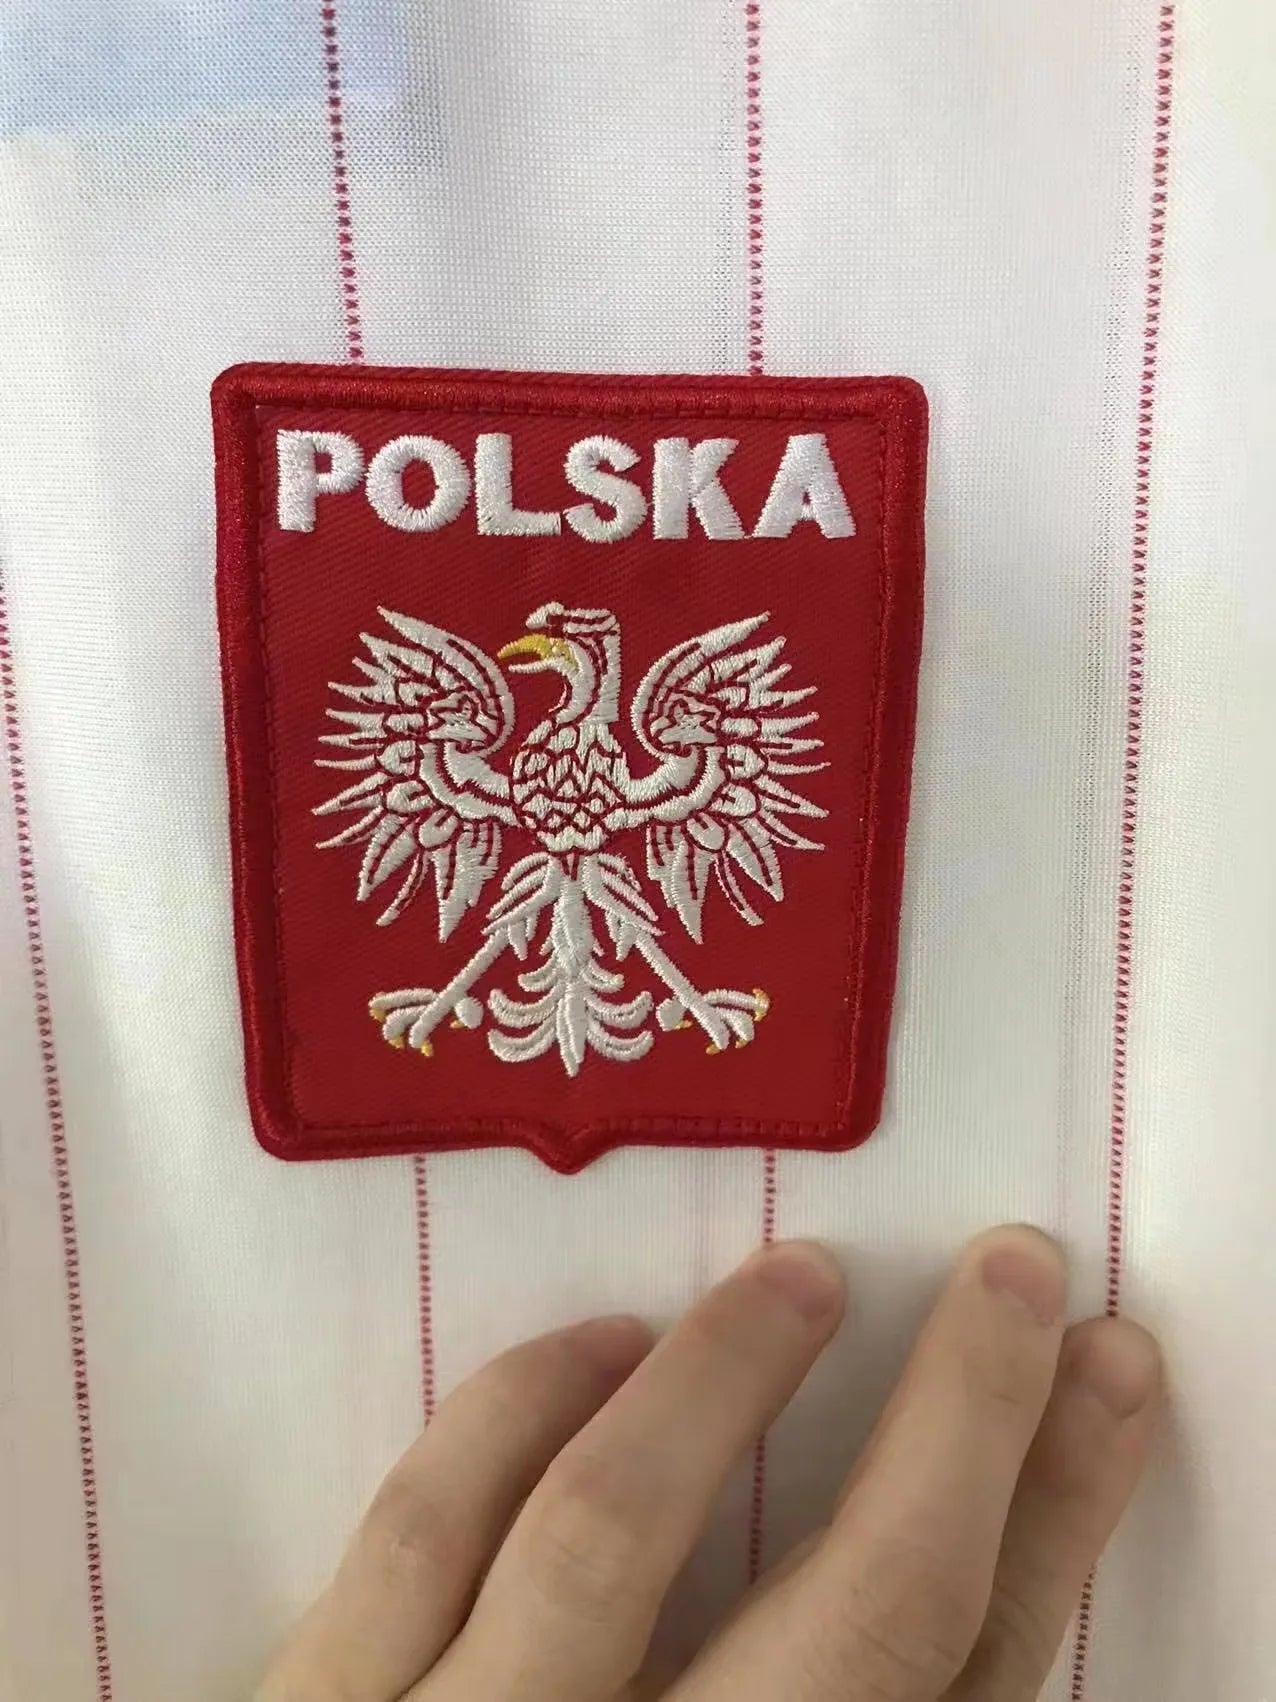 Poland 1984 Home Shirt